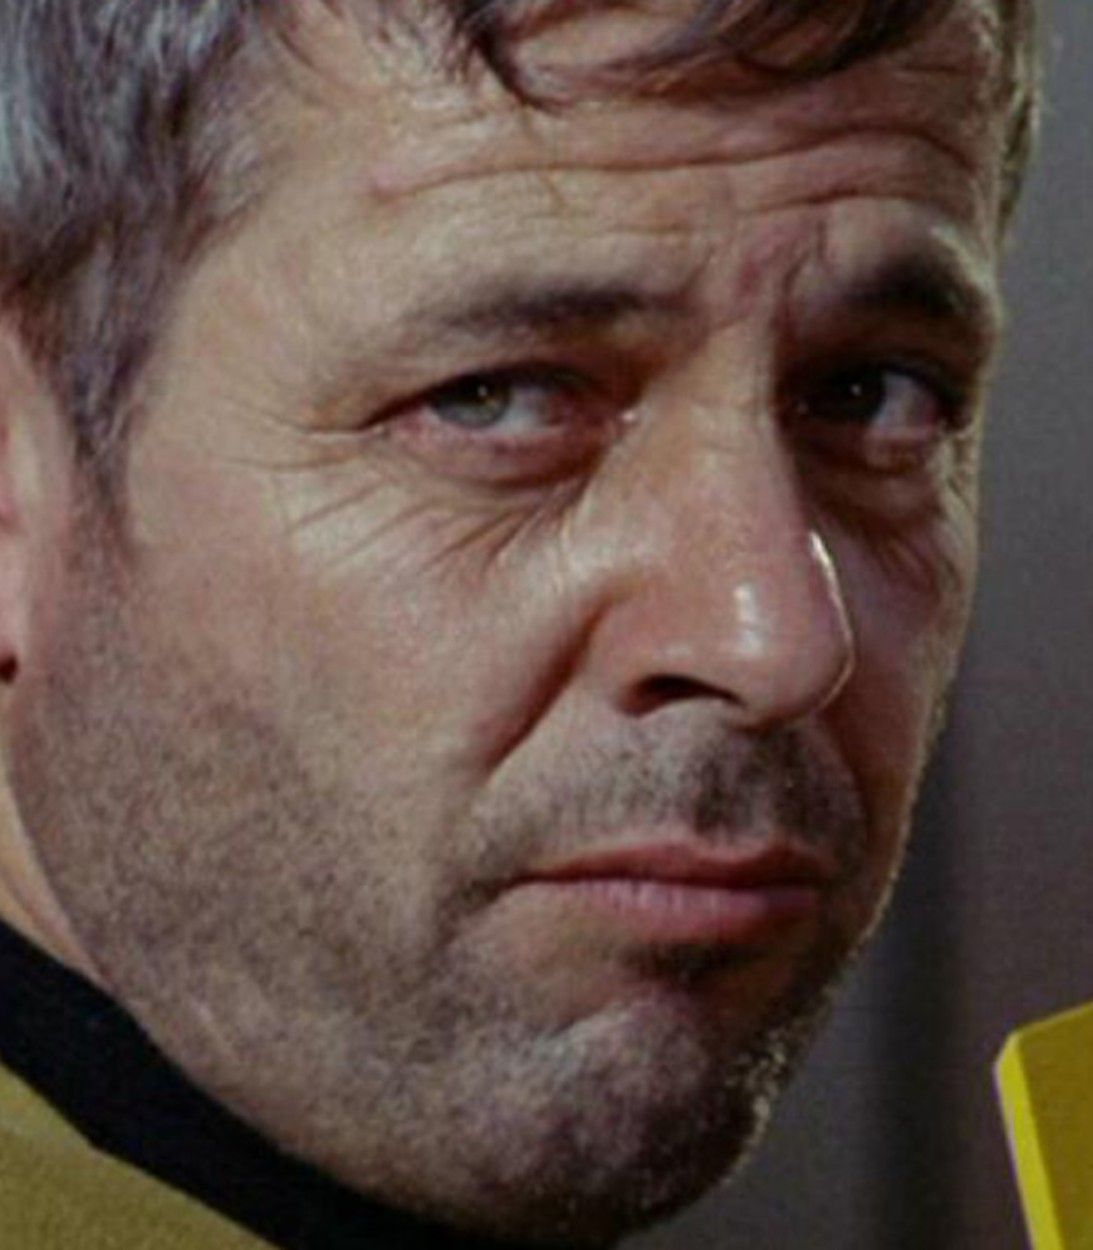 Captain Matt Decker Star Trek original series pic vertical